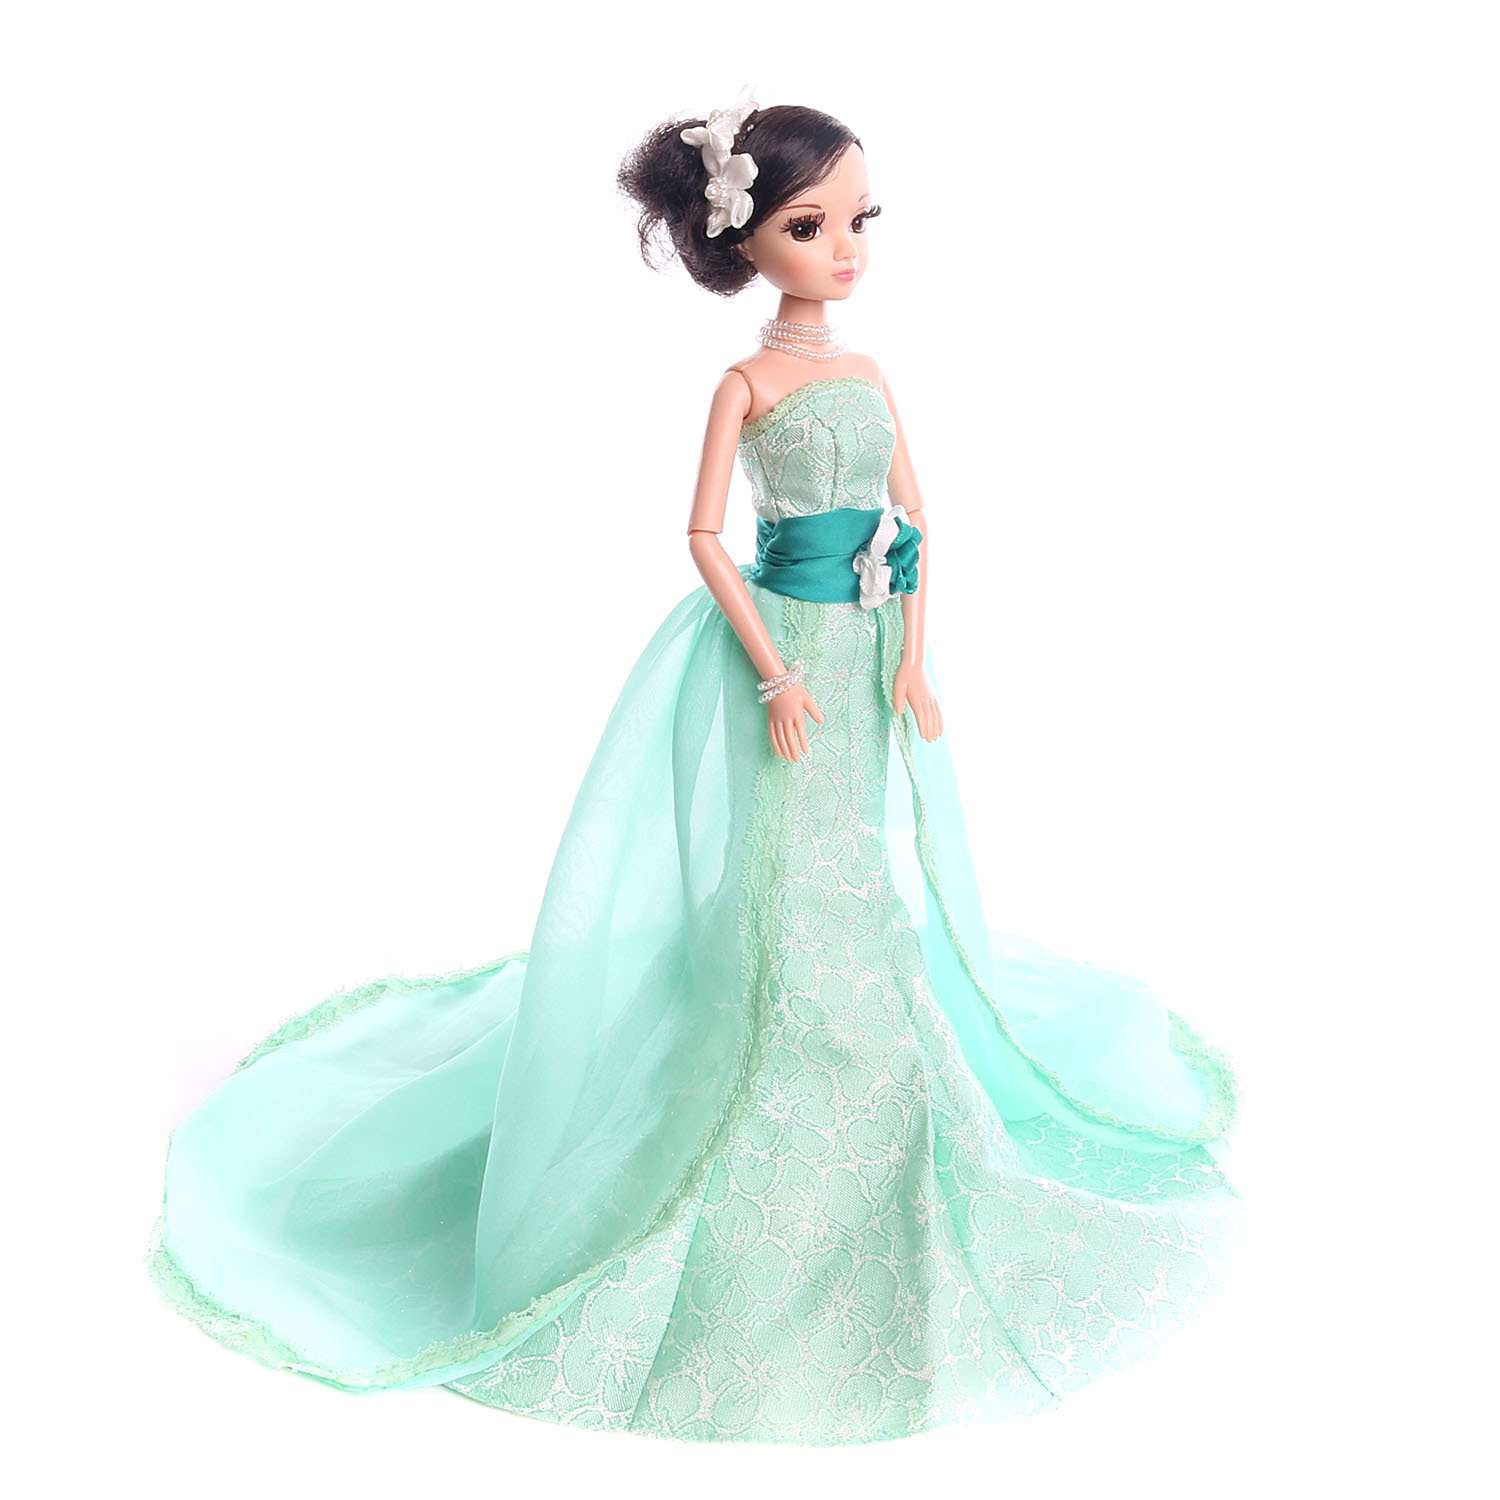 Кукла Sonya Rose платье Жасмин R4339N - фото 4